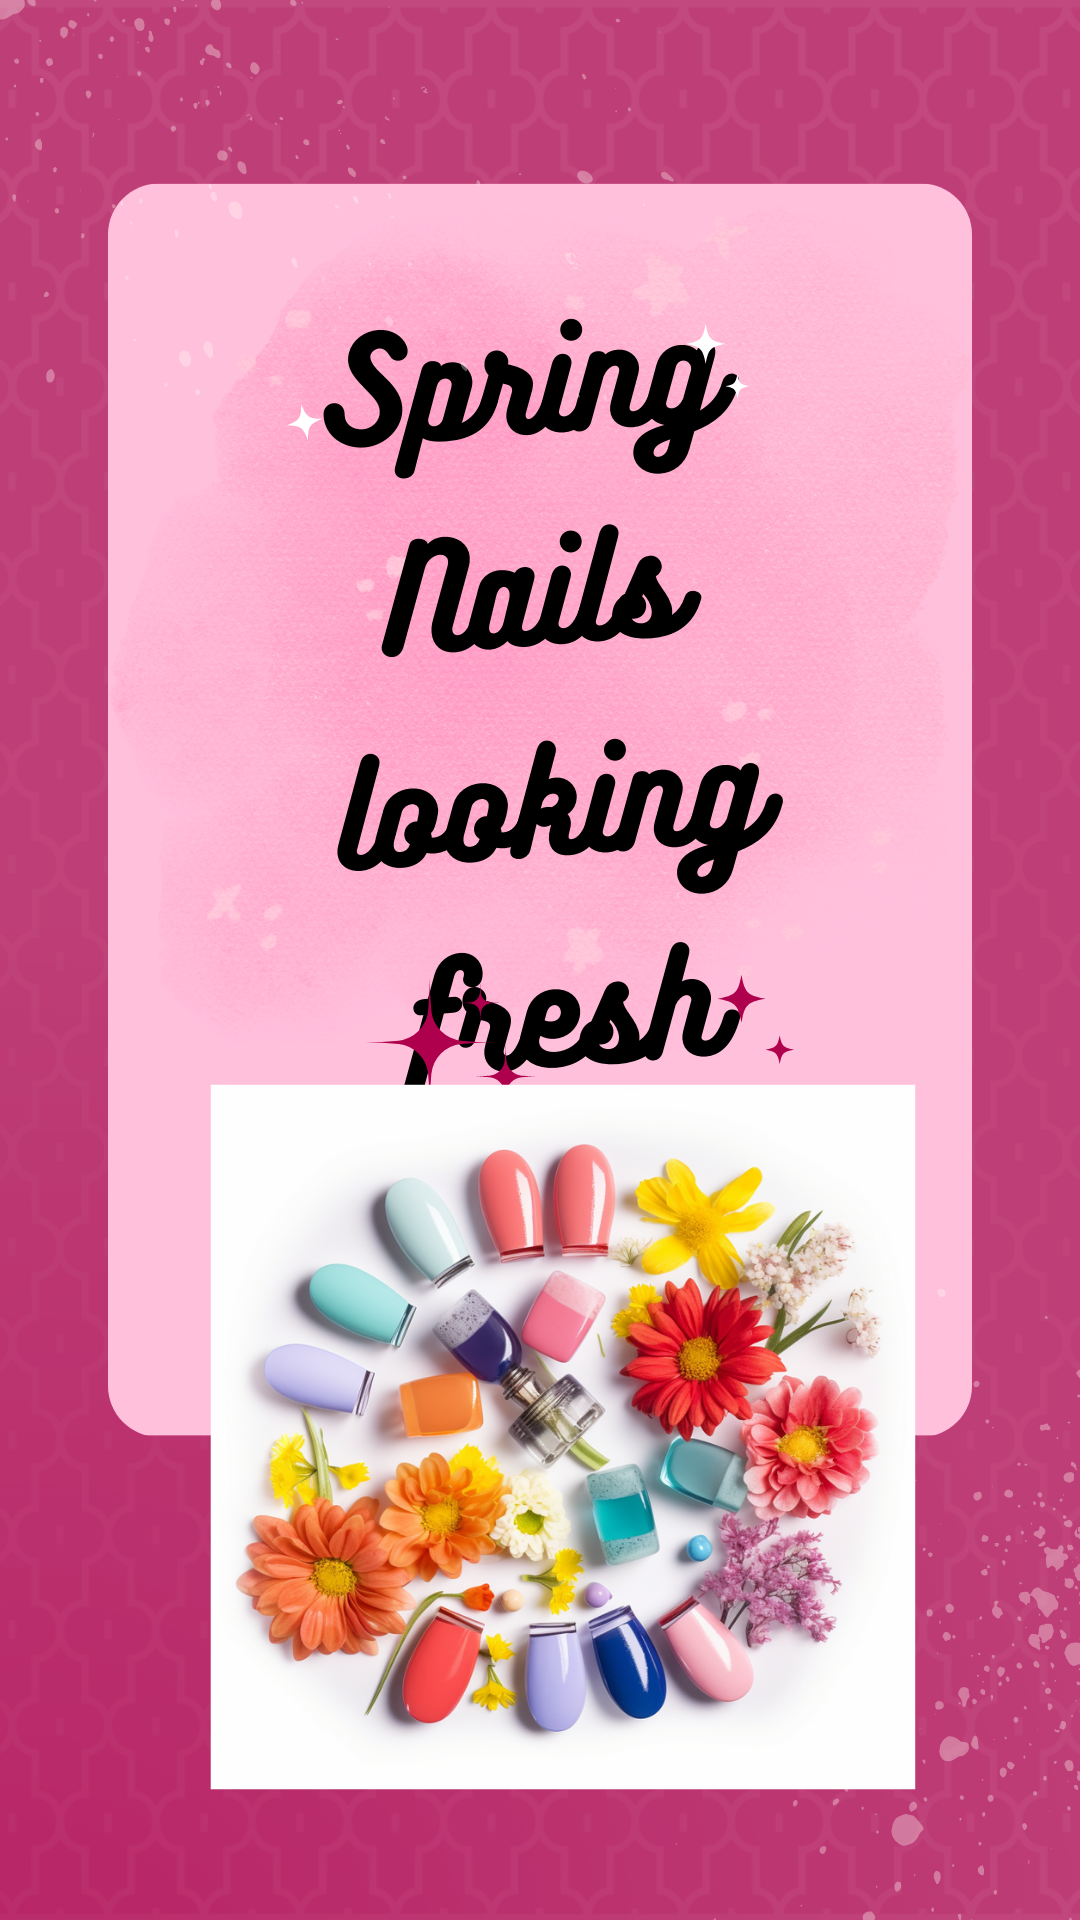 Spring Nail Design Ideas, great way to celebrate this season